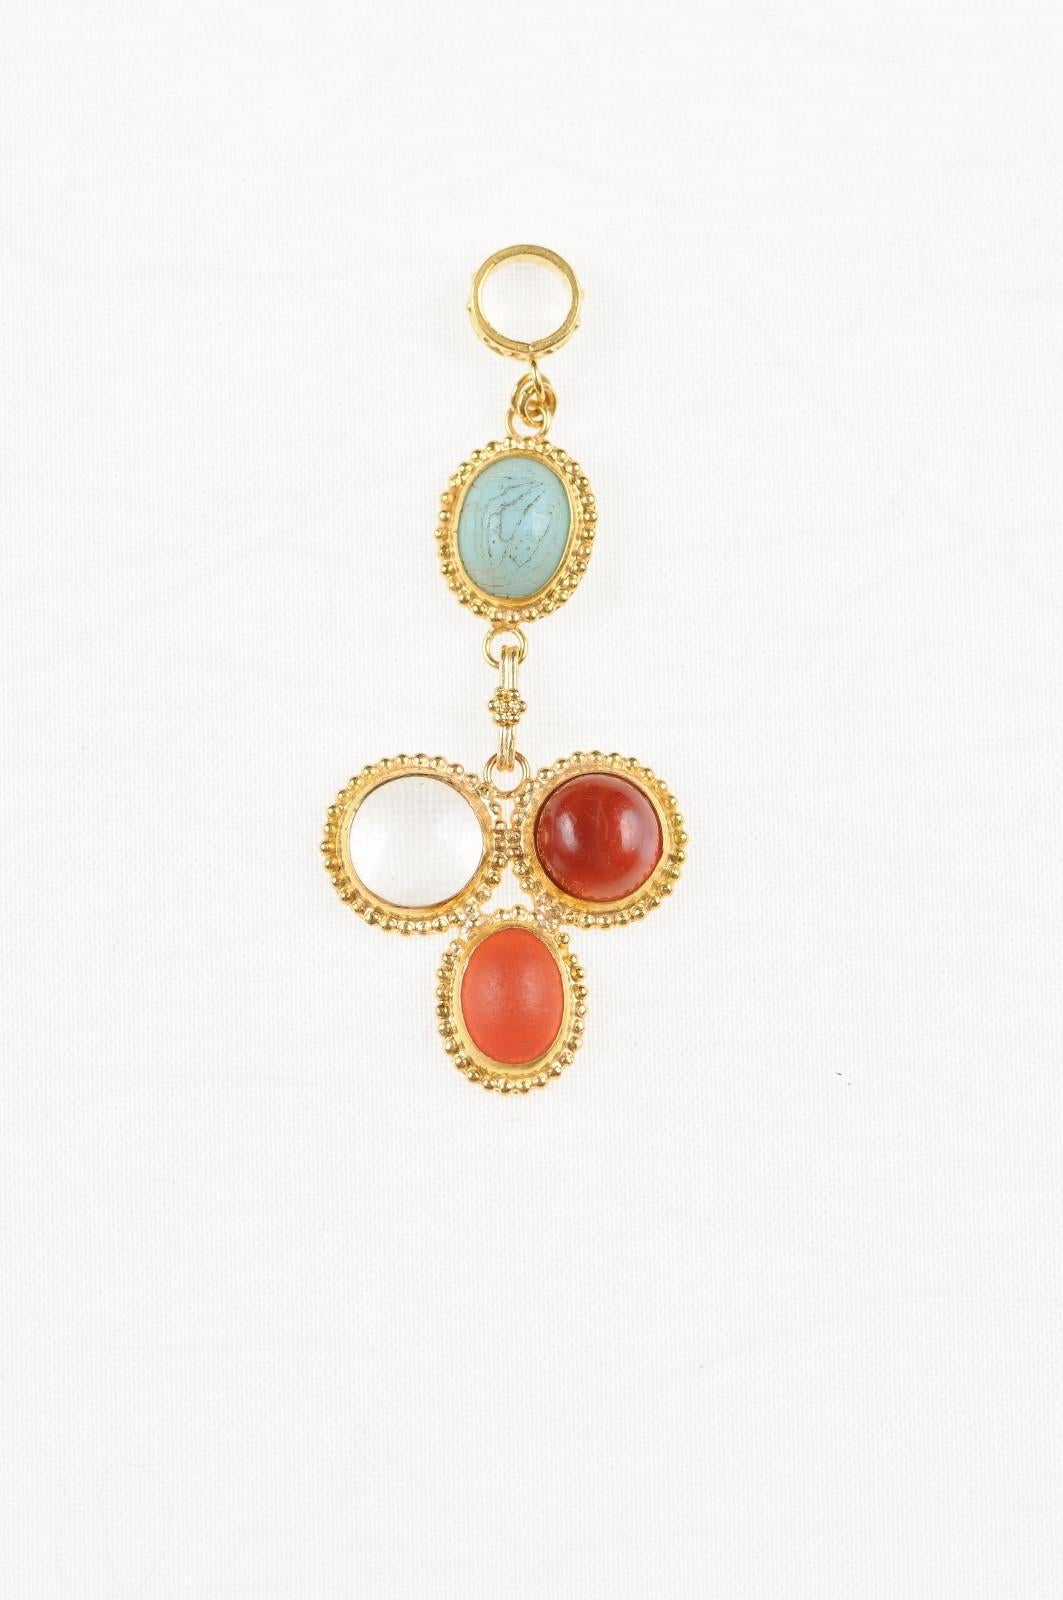 Ein schöner mehrfarbiger Tropfenanhänger für eine Halskette aus römischem Glas (400 bis 500 n. Chr.), eingefasst in einen kundenspezifischen 21-karätigen Goldanhänger mit Goldperlenakzenten und 21-karätigem Goldbügel. Der Anhänger ist 1 7/8